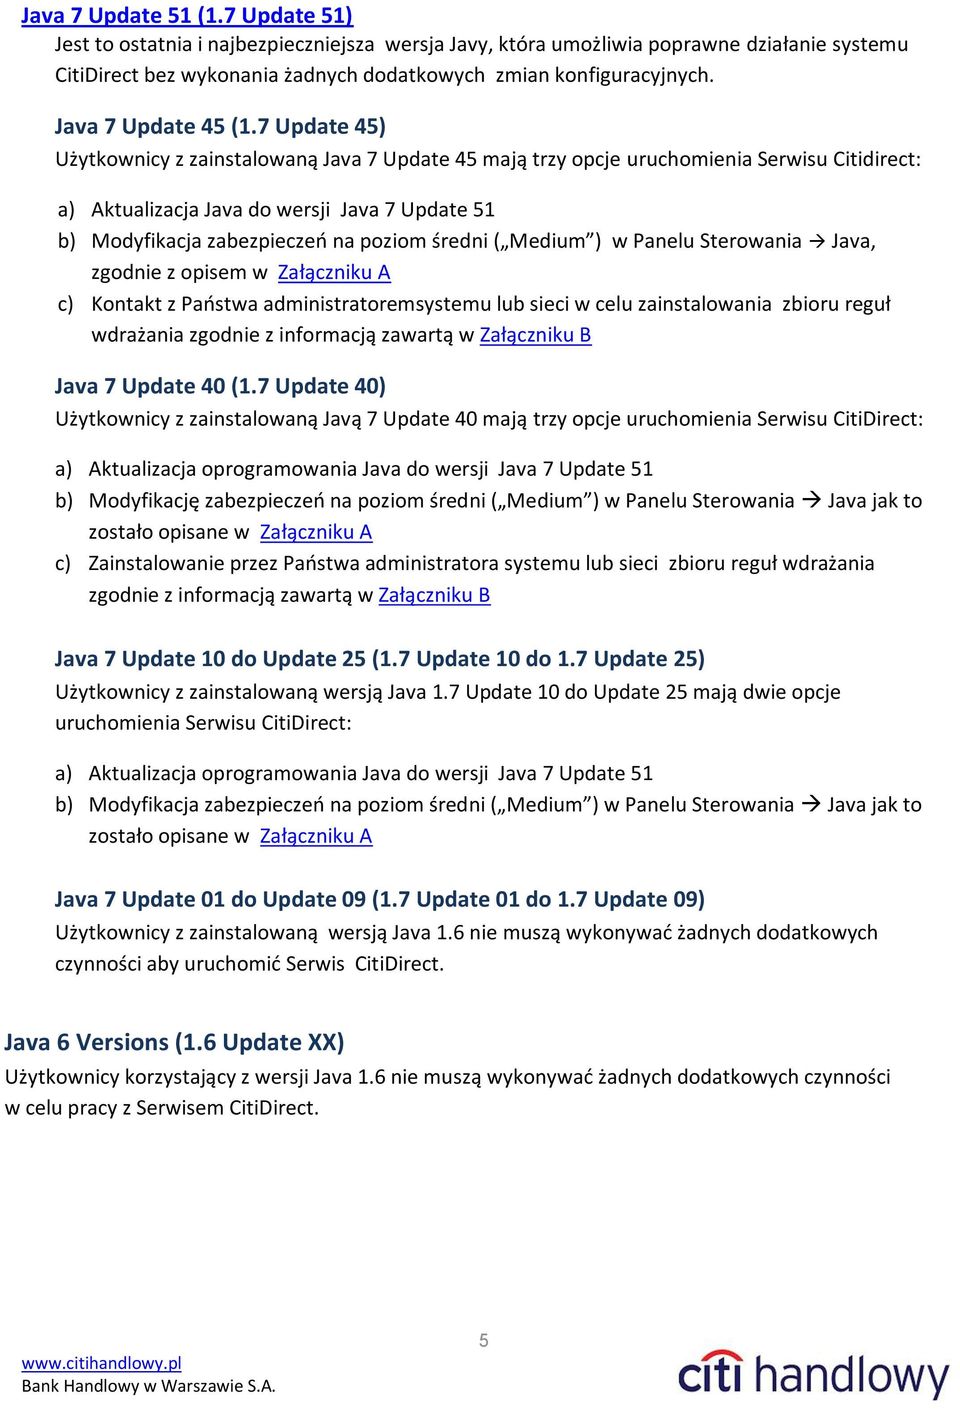 7 Update 45) Użytkownicy z zainstalowaną Java 7 Update 45 mają trzy opcje uruchomienia Serwisu Citidirect: a) Aktualizacja Java do wersji Java 7 Update 51 b) Modyfikacja zabezpieczeń na poziom średni